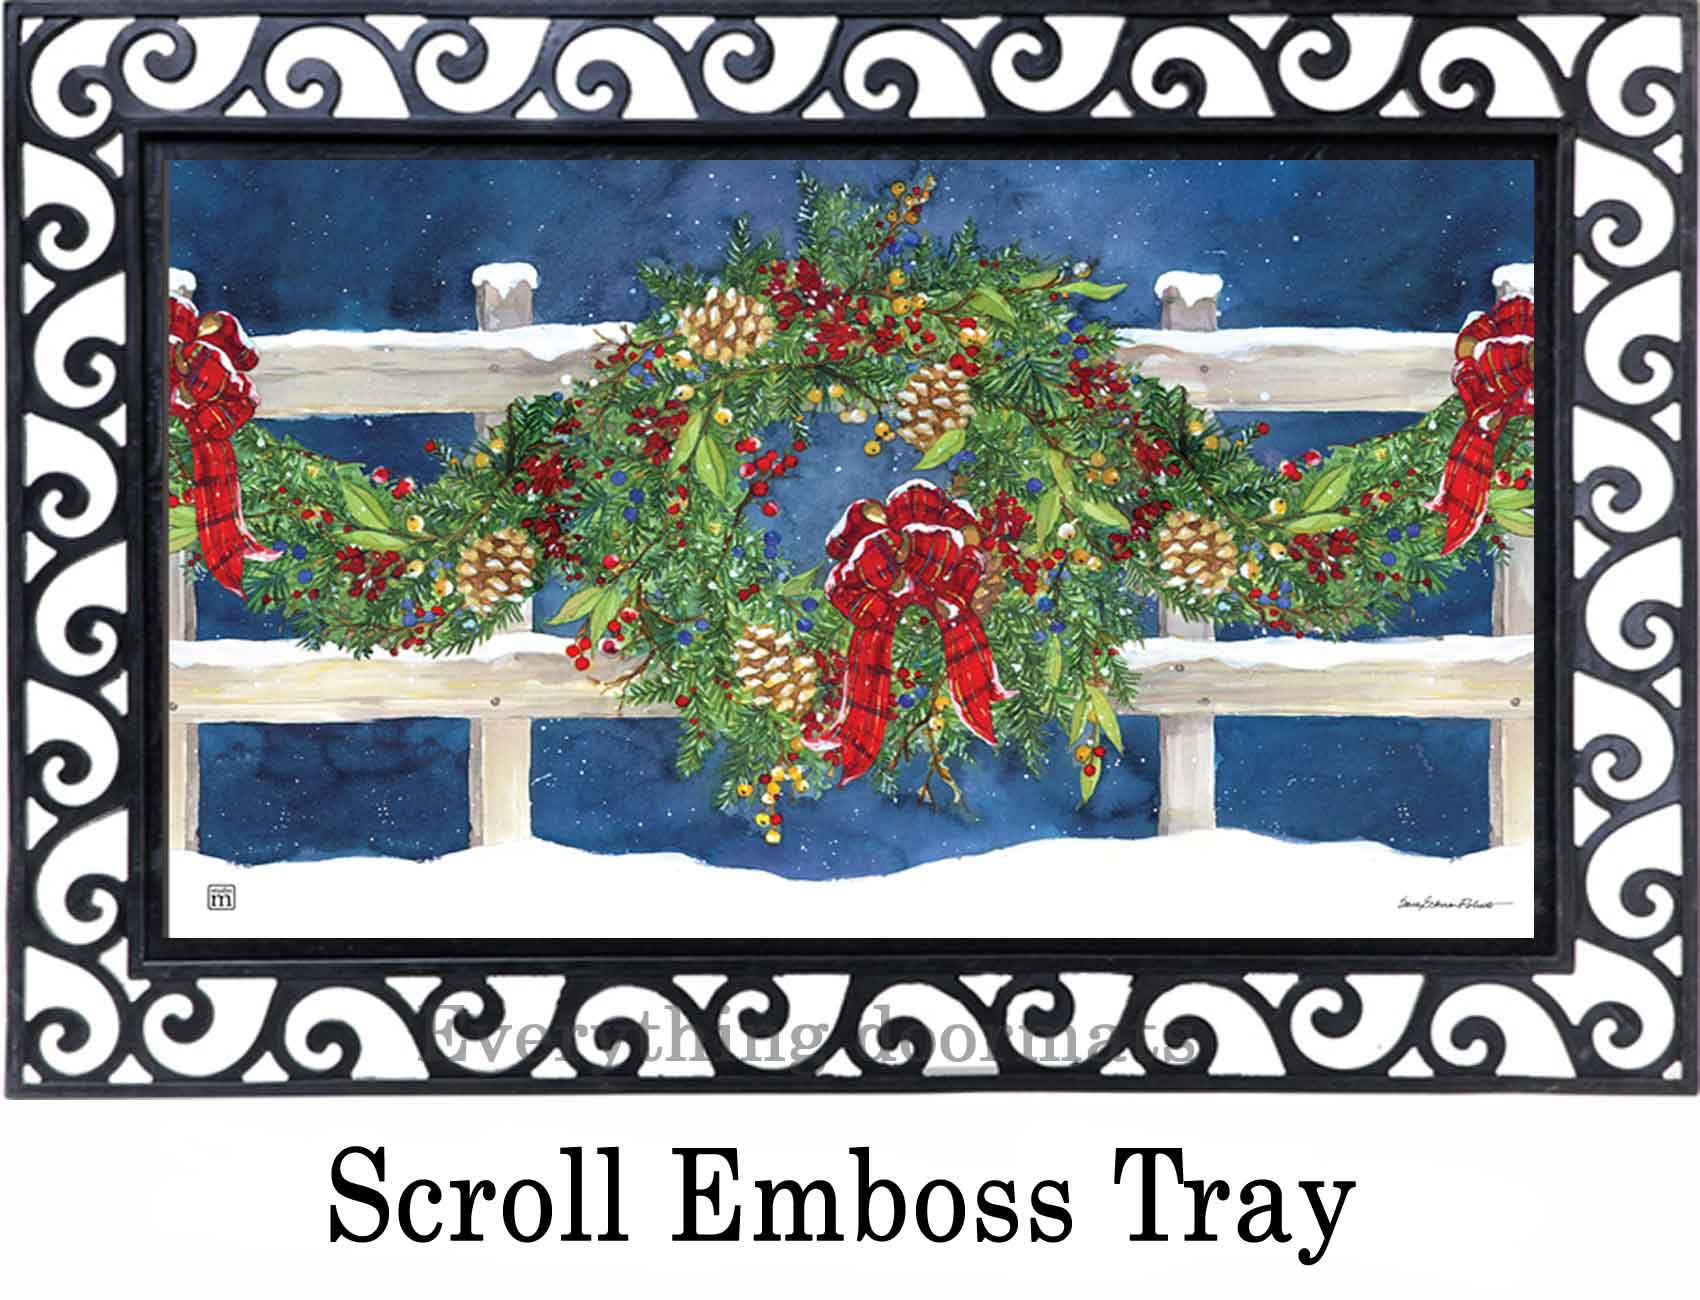 https://www.everythingdoormats.com/images/products/winter-wreath-insert-doormat-in-outdoor-scroll-emboss-doormat-tray.jpg